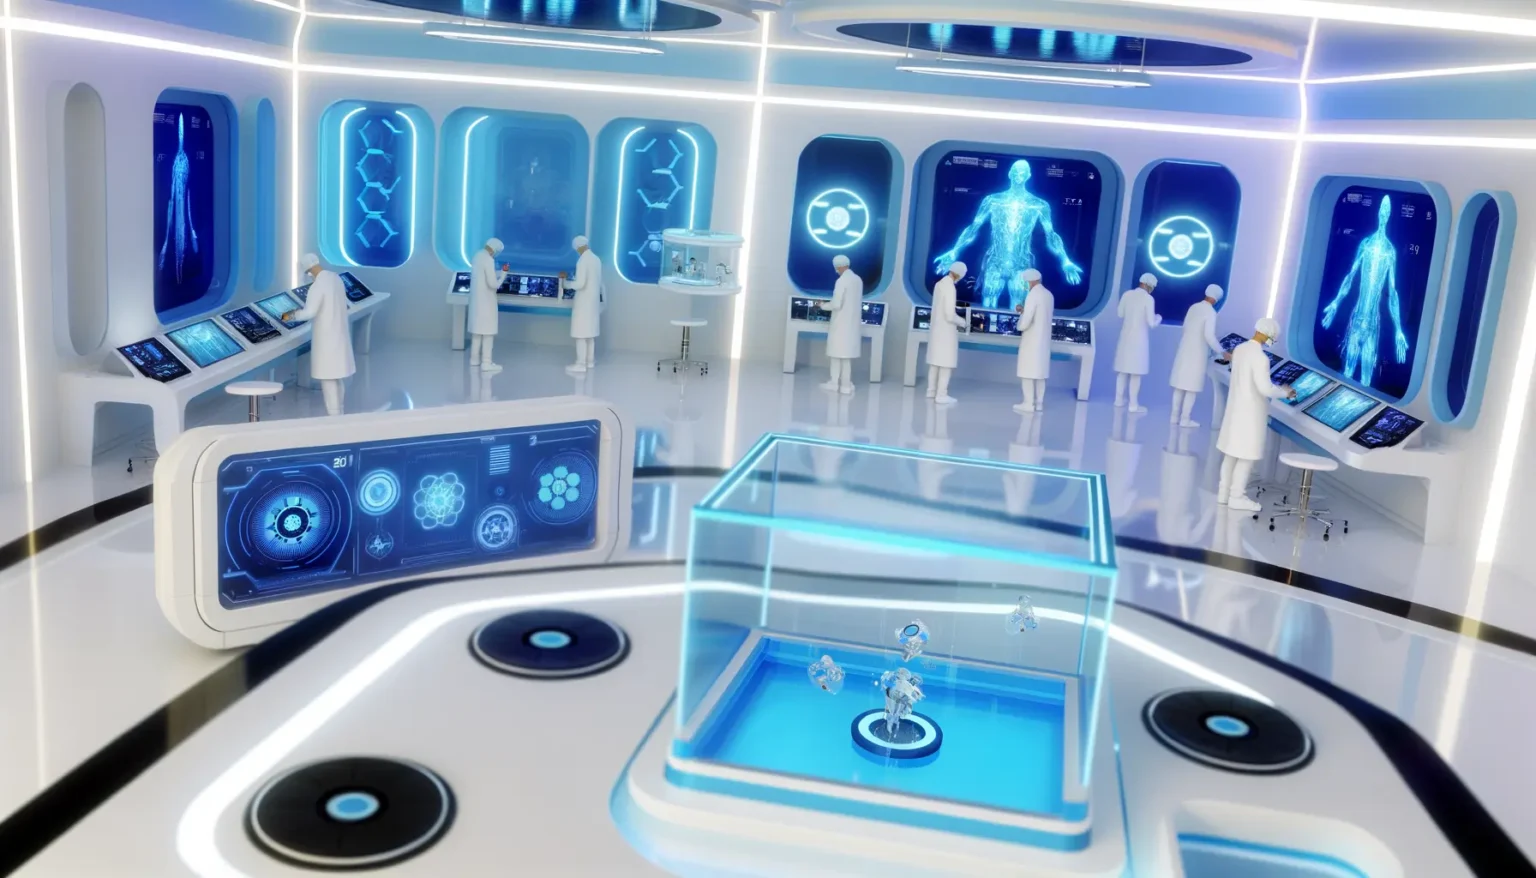 Futuristisches Labor mit Personen in weißen Labormänteln, die an verschiedenen hochmodernen Stationen arbeiten, umgeben von interaktiven Bildschirmen und digitalen Anzeigen, die medizinische und wissenschaftliche Daten zeigen. Im Zentrum befindet sich eine transparente holographische Darstellung von menschlichen Figuren.